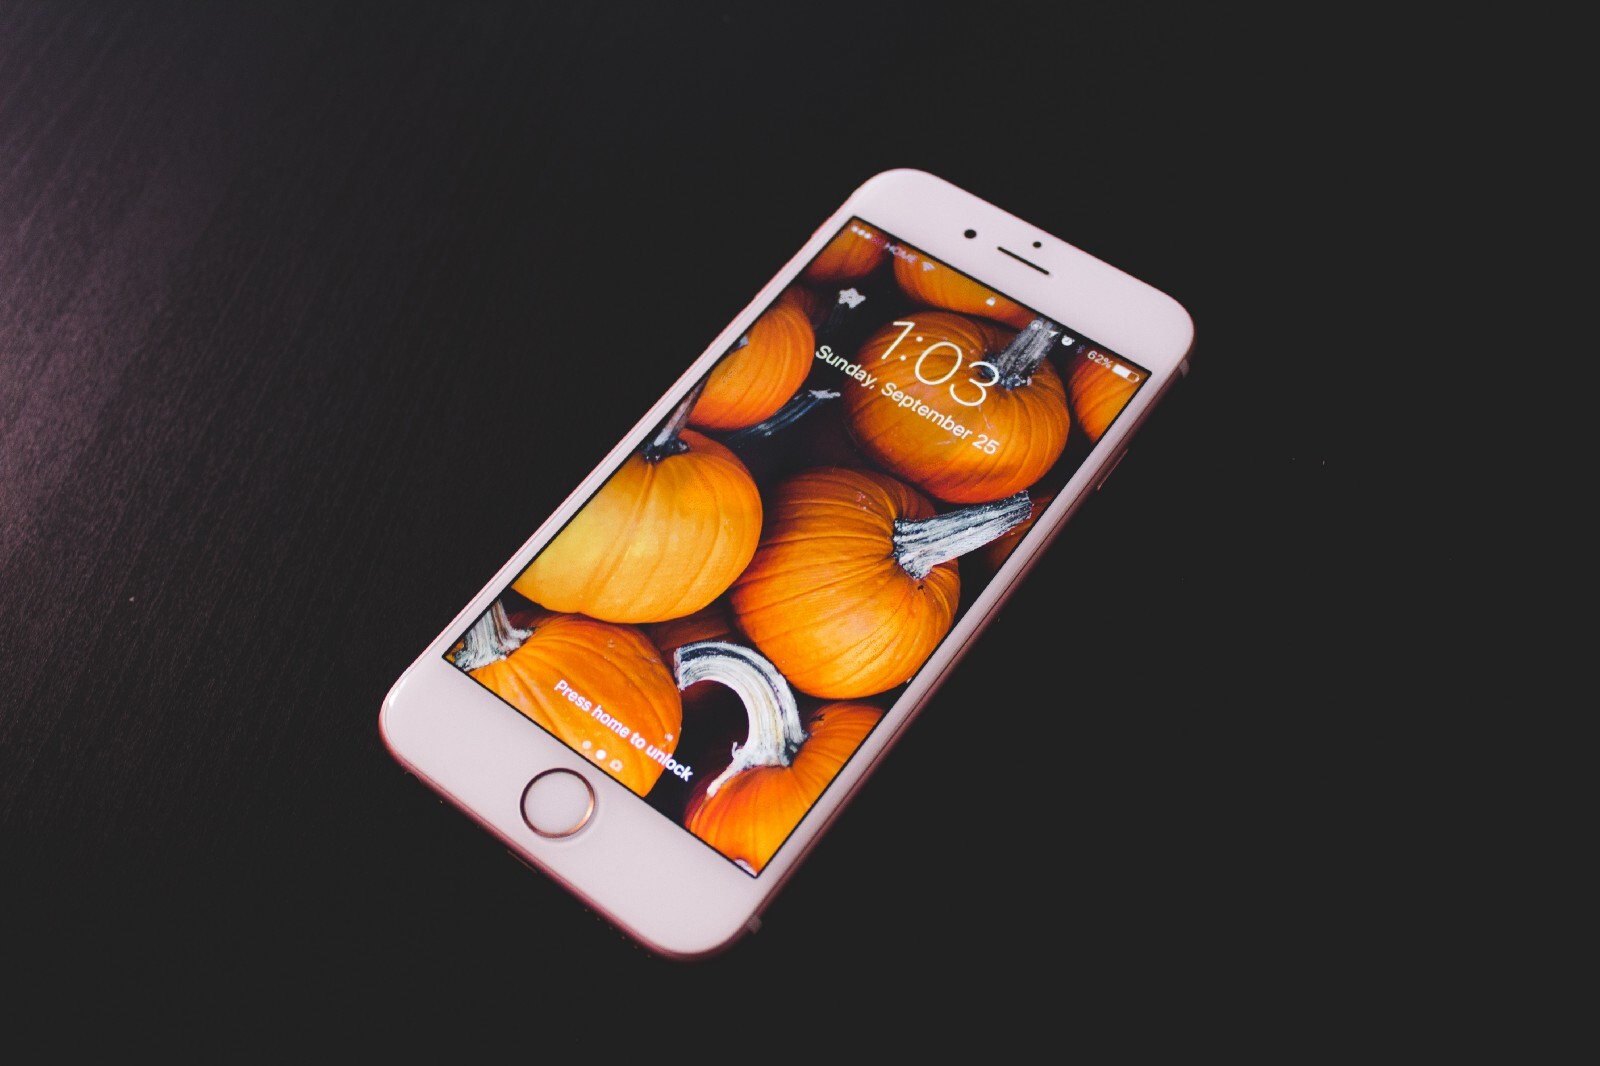 Review iPhone 8 Plus, iPhone 8 - Top 9 Tiêu Chí Đánh Giá - Tin Công Nghệ -  Điện Thoại Giá Kho Dienthoaigiakho.vn